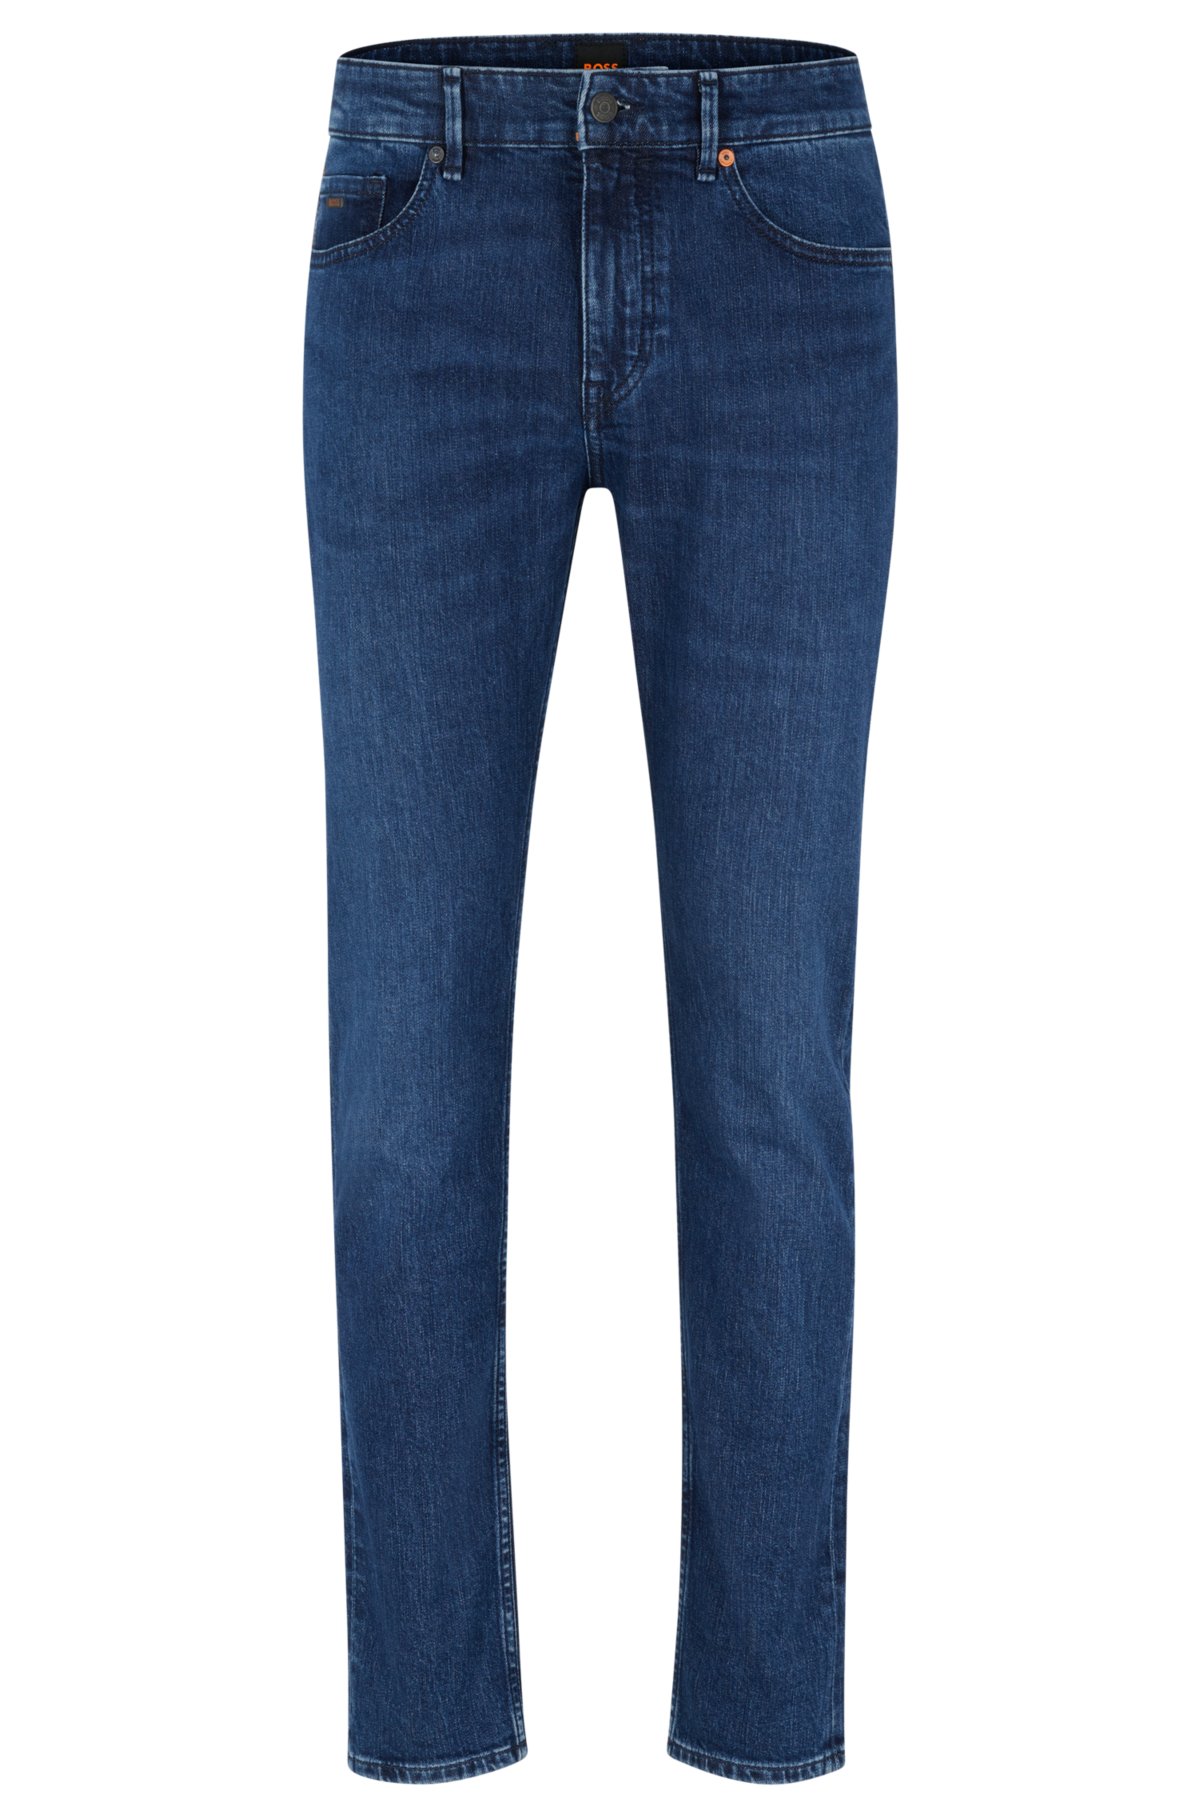 BOSS jeans in blue comfort-stretch denim